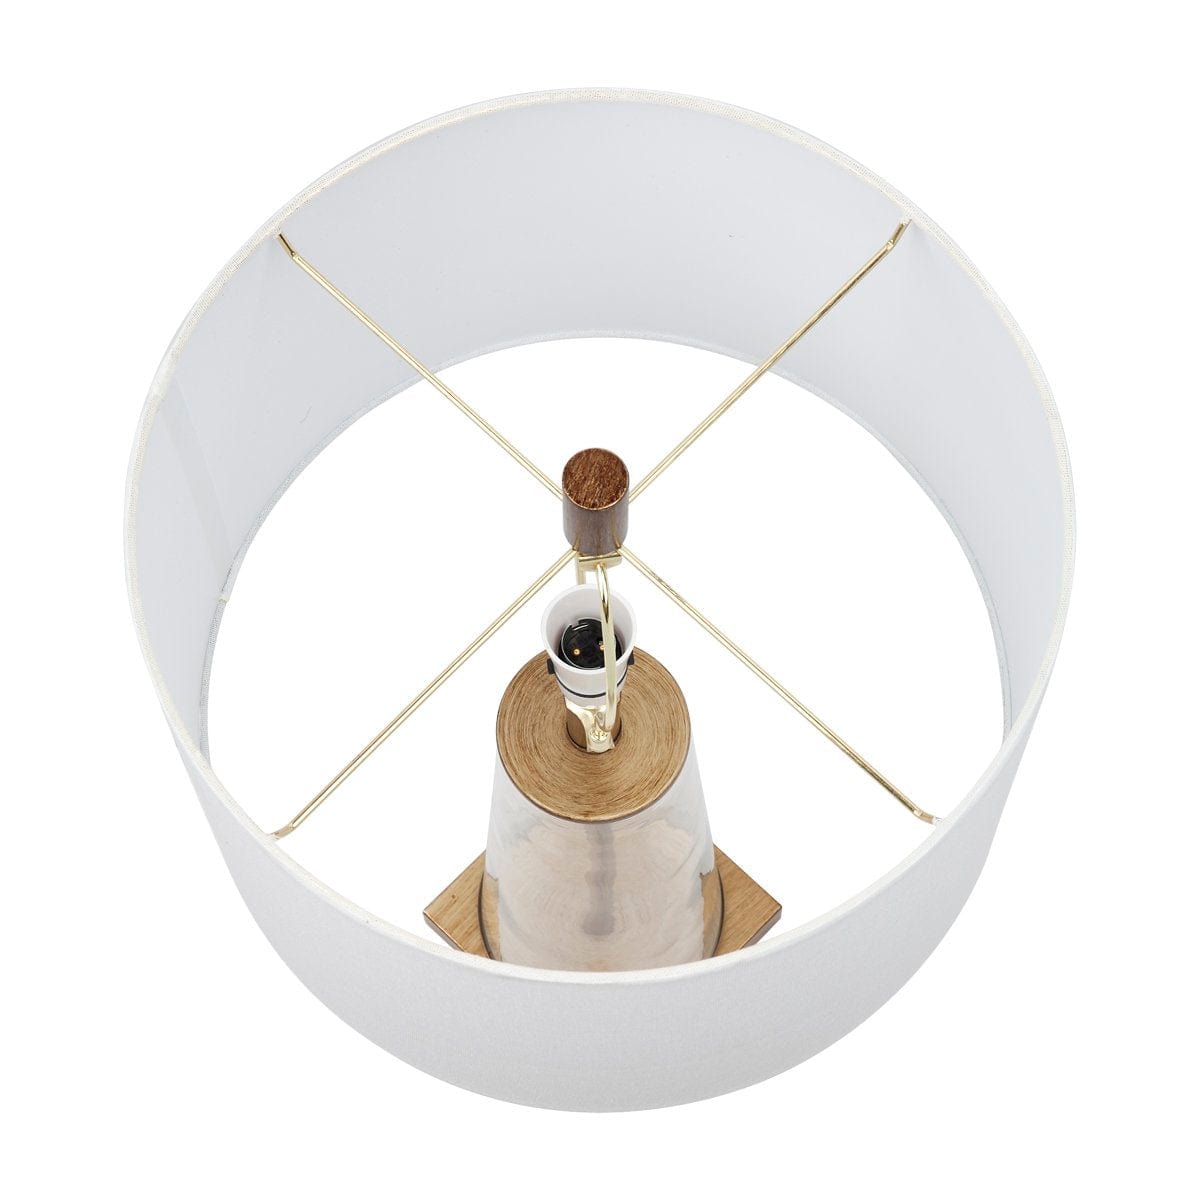 CAFE LIGHTING & LIVING Table Lamp Aspen Table Lamp - White 13309